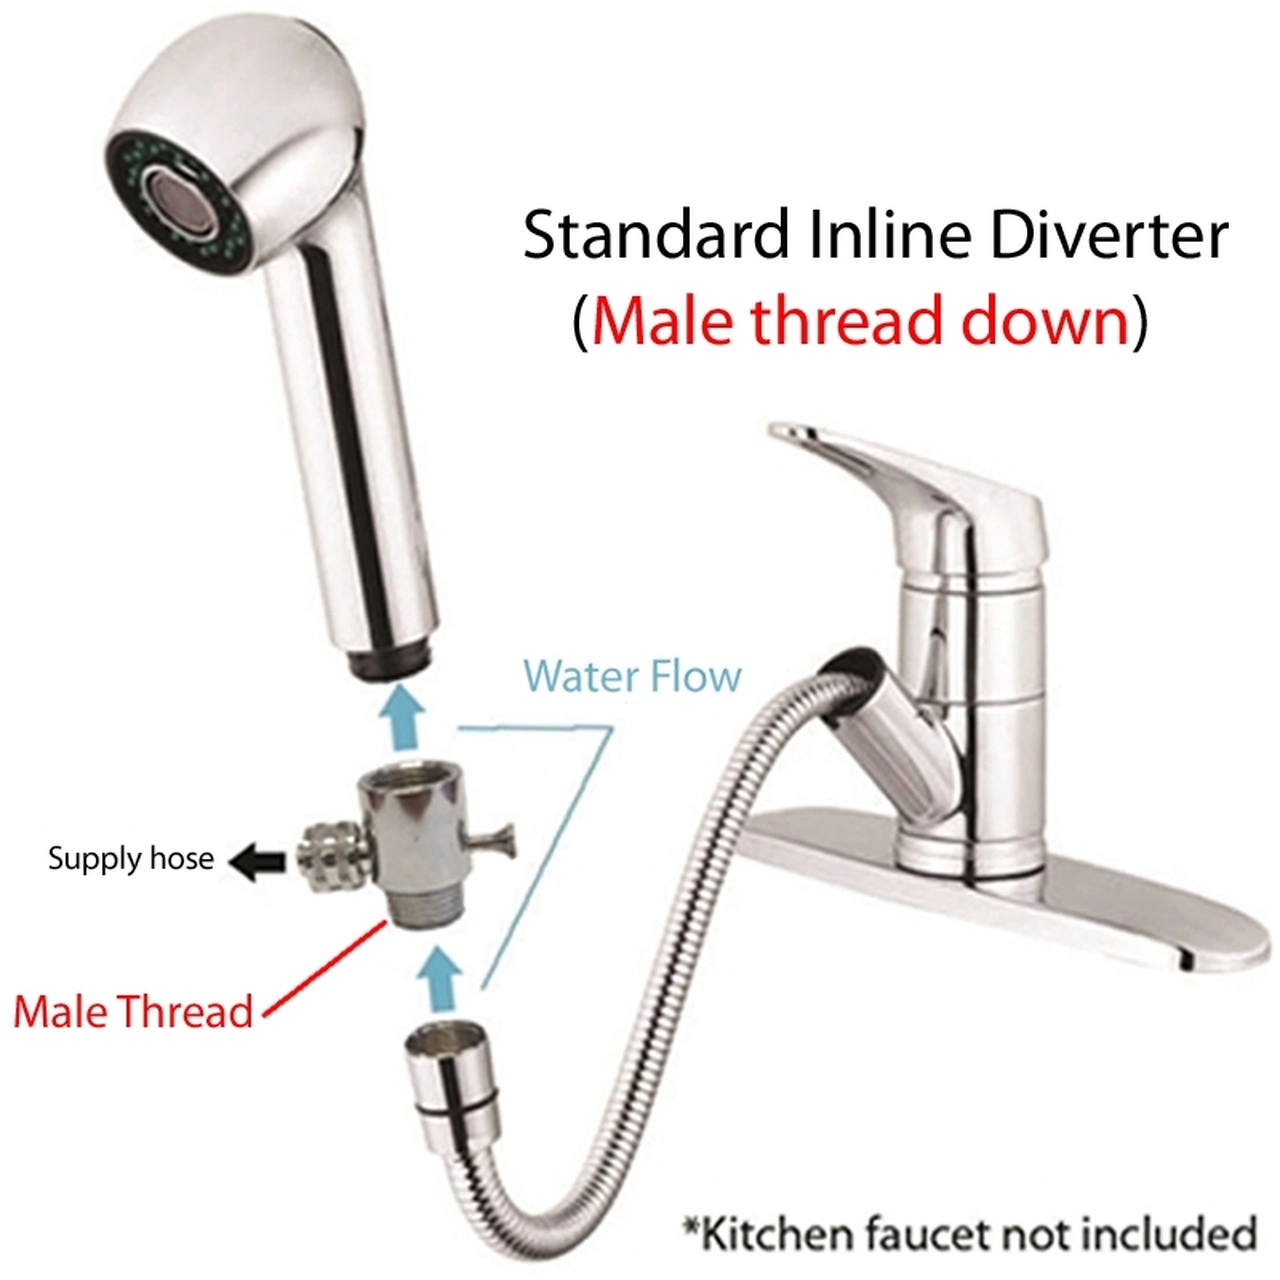 In-line Diverter (Standard)